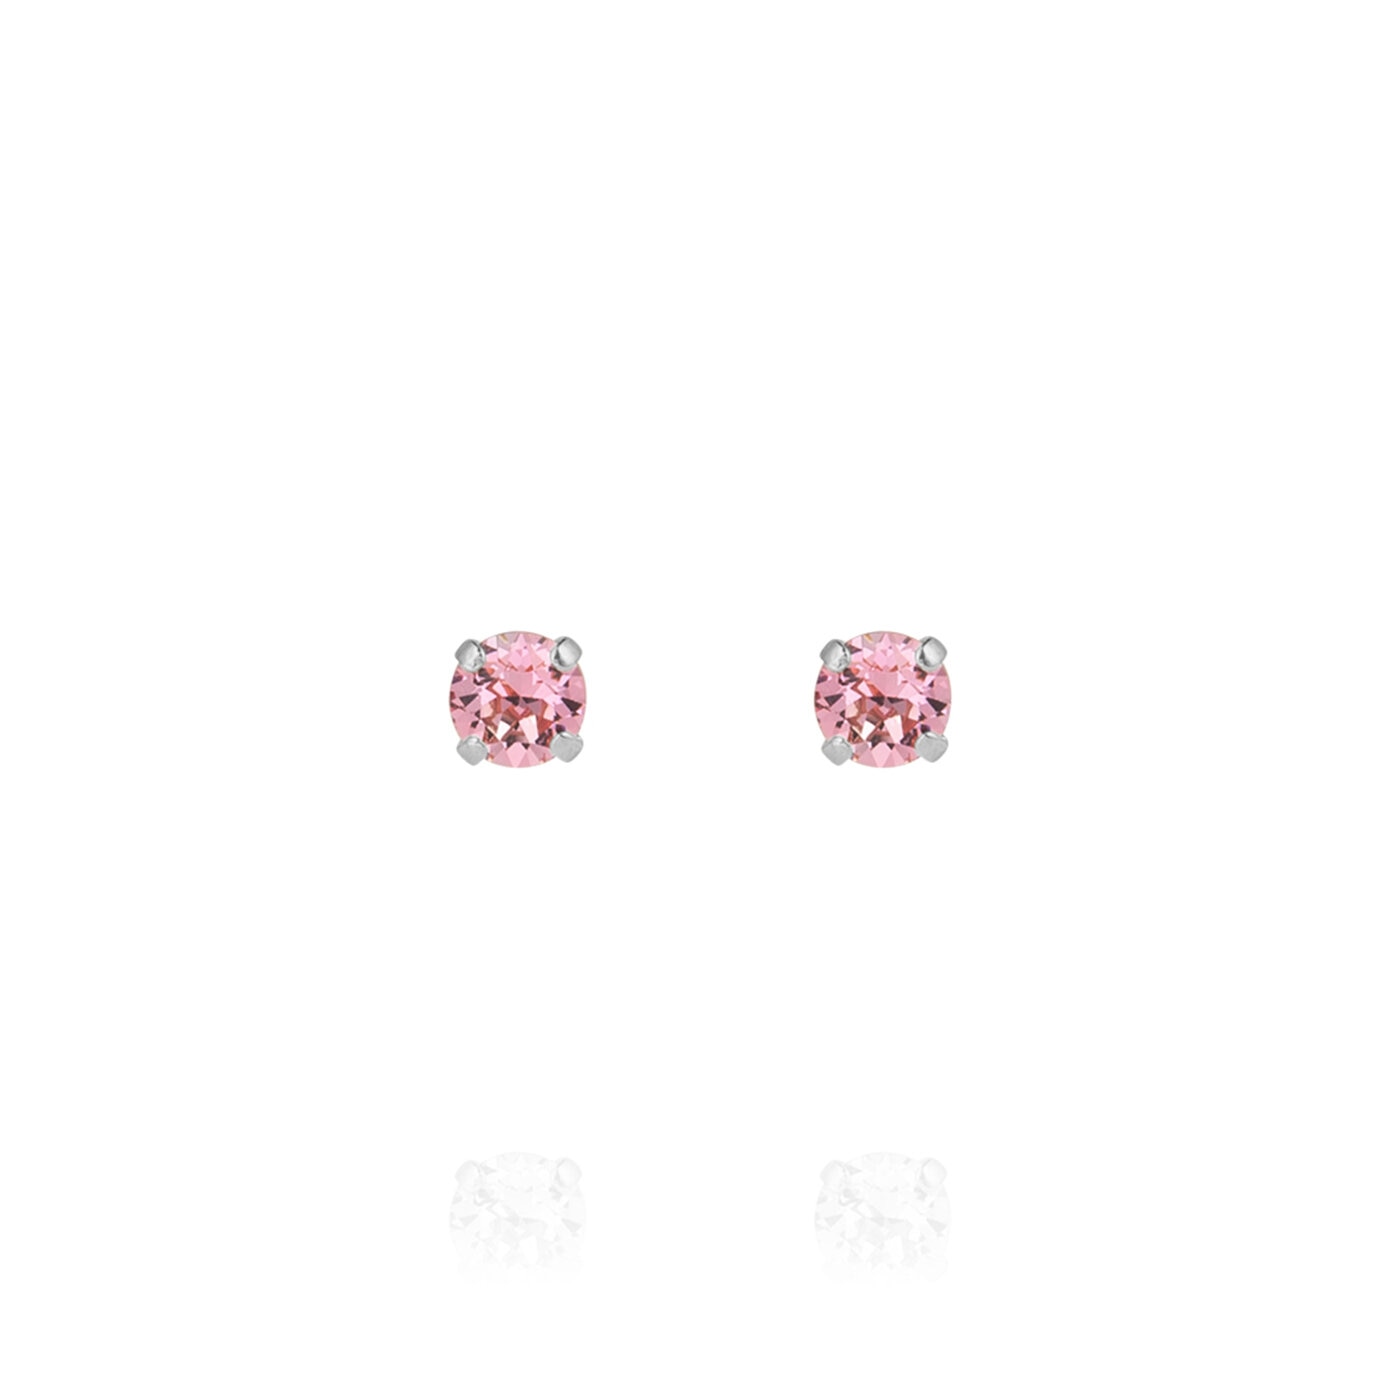 Mini Stud Earrings Rhodium / Light Rose